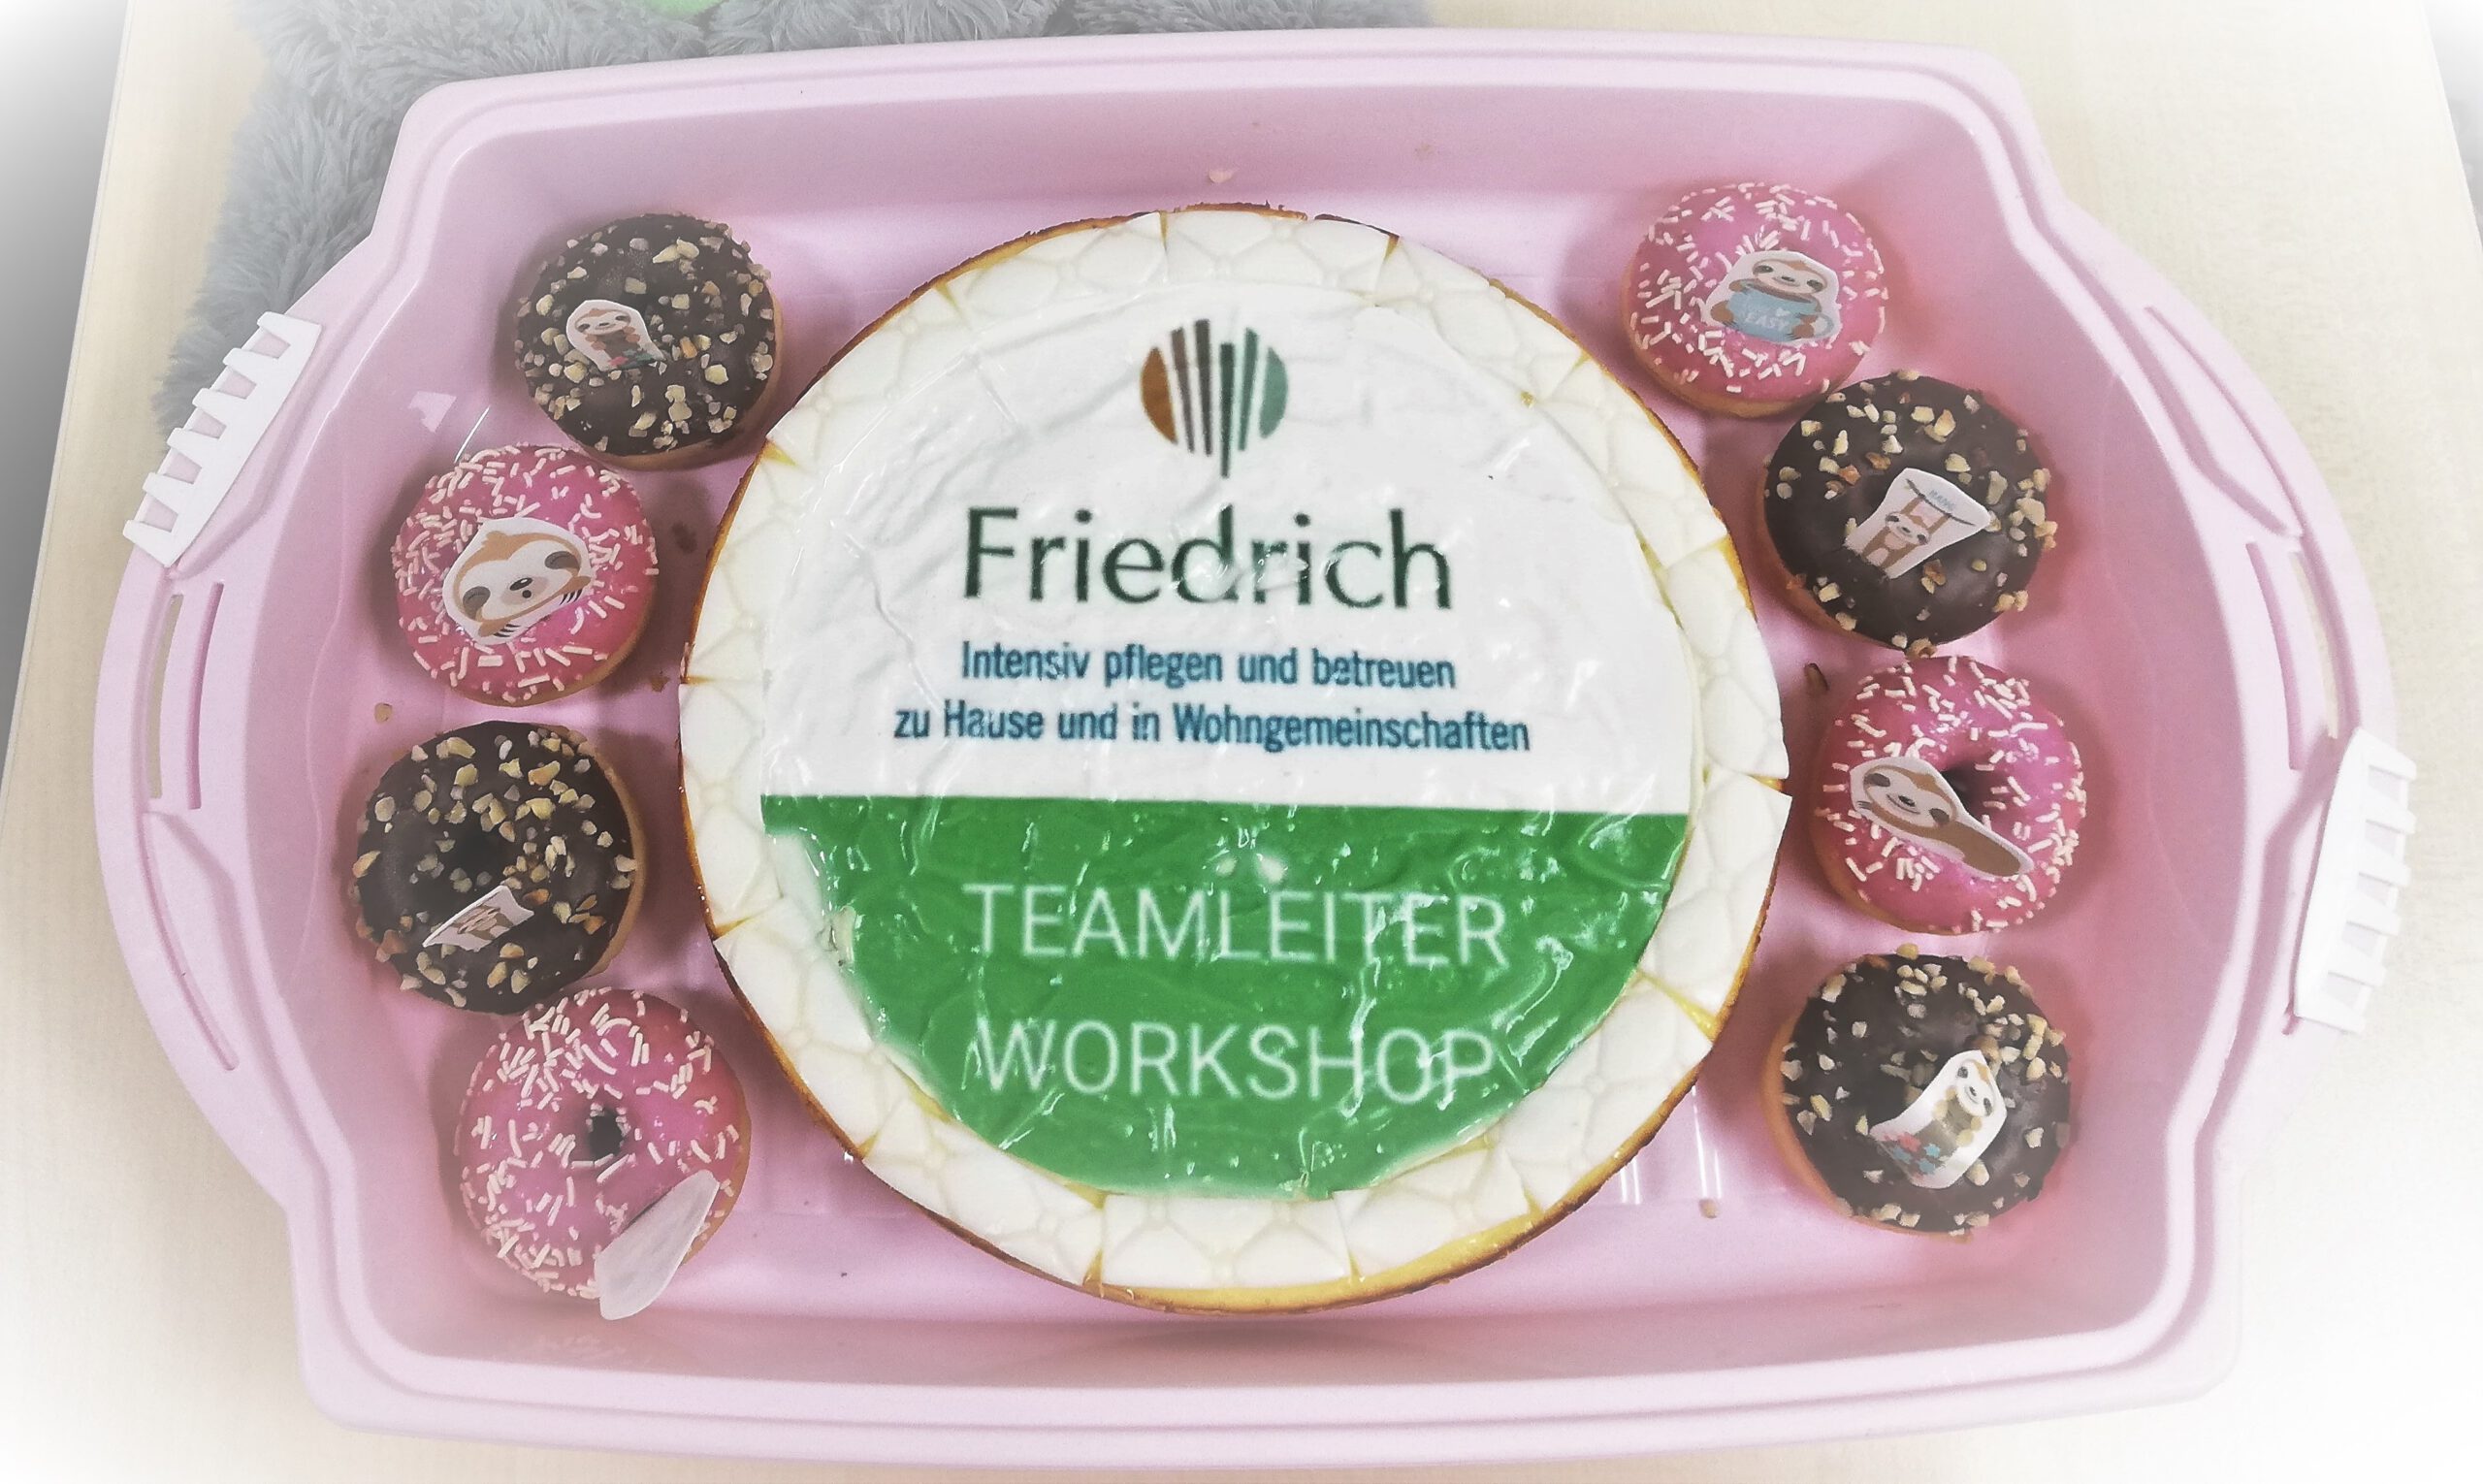 Teamleiter-Workshops beim Pflegedienst Friedrich - Donuts